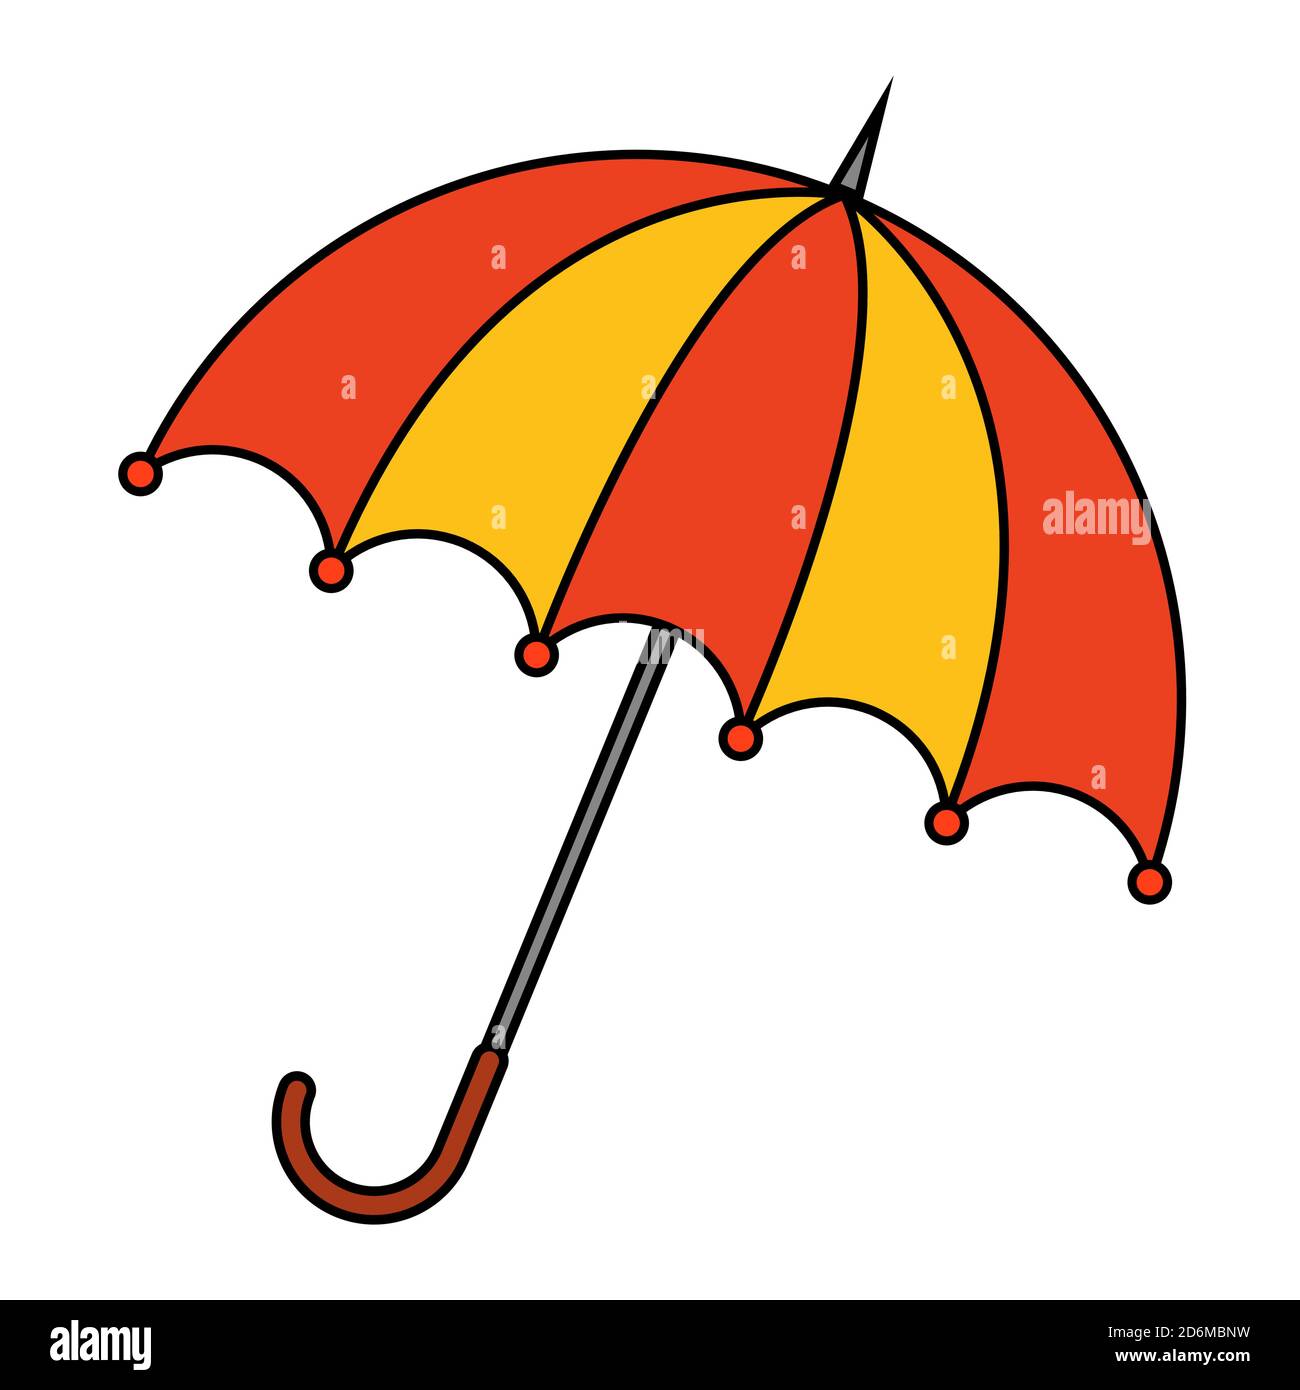 Sonnenschirm Clip Art isoliert auf weiß. Regenschirm Cartoon Vektor Illustration. Farbenfrohes, saisonales Design. Symbol für herbstlichen Regenschutz. Herbstmeteorolo Stock Vektor